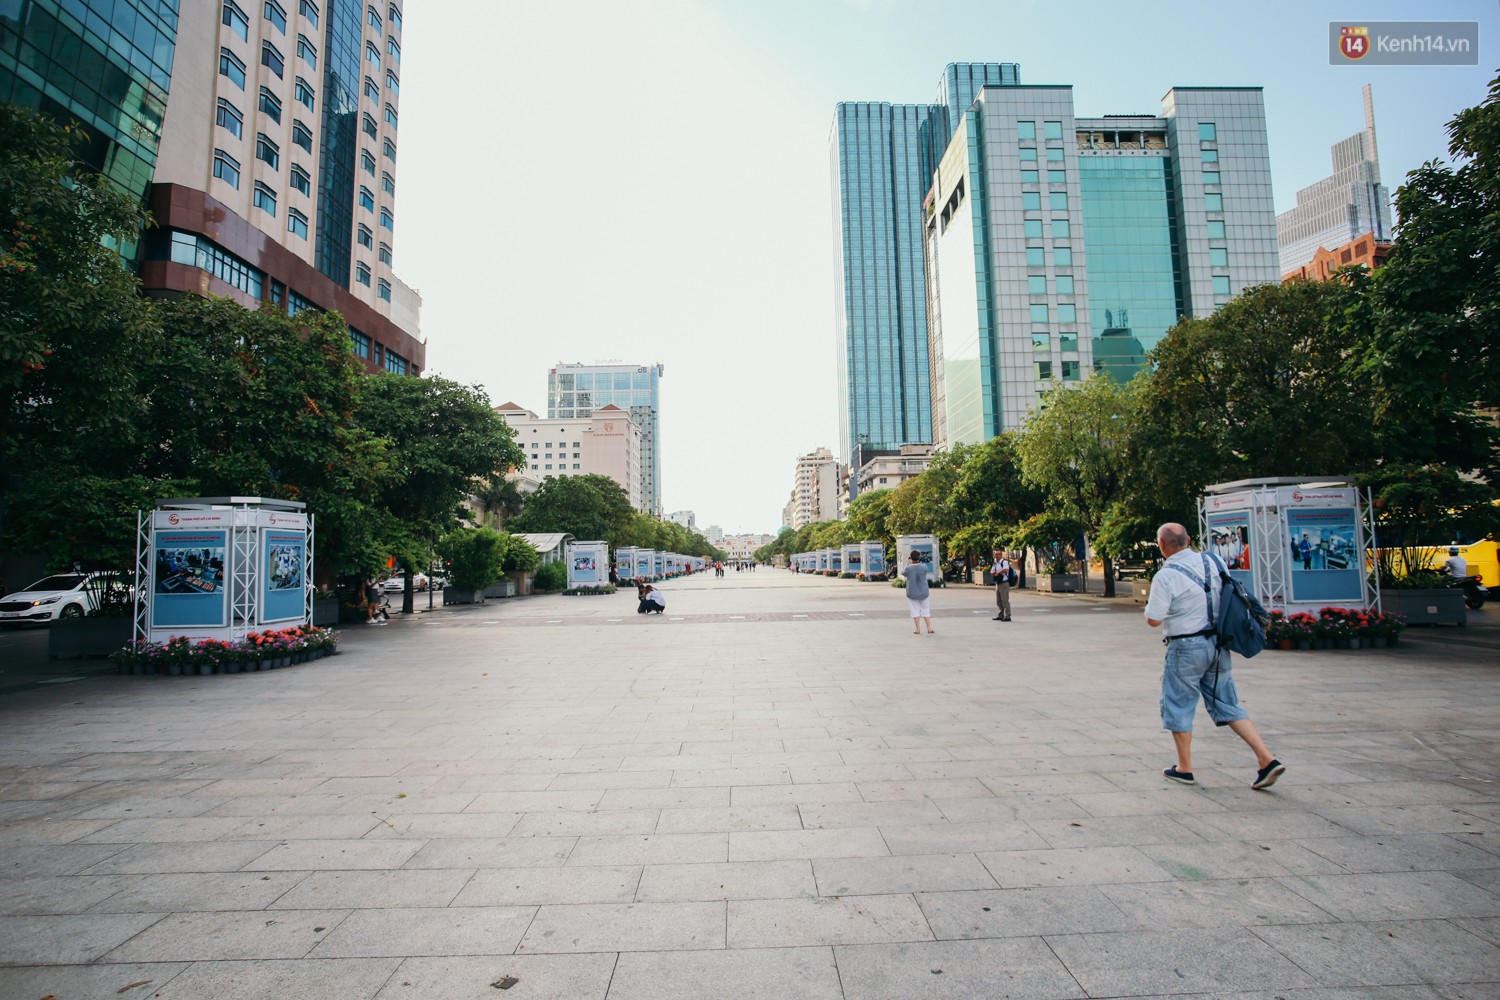 Sài Gòn bình yên lạ thường, đường phố vắng bóng phương tiện trong những ngày nghỉ lễ 30/4 - 1/5 - Ảnh 3.